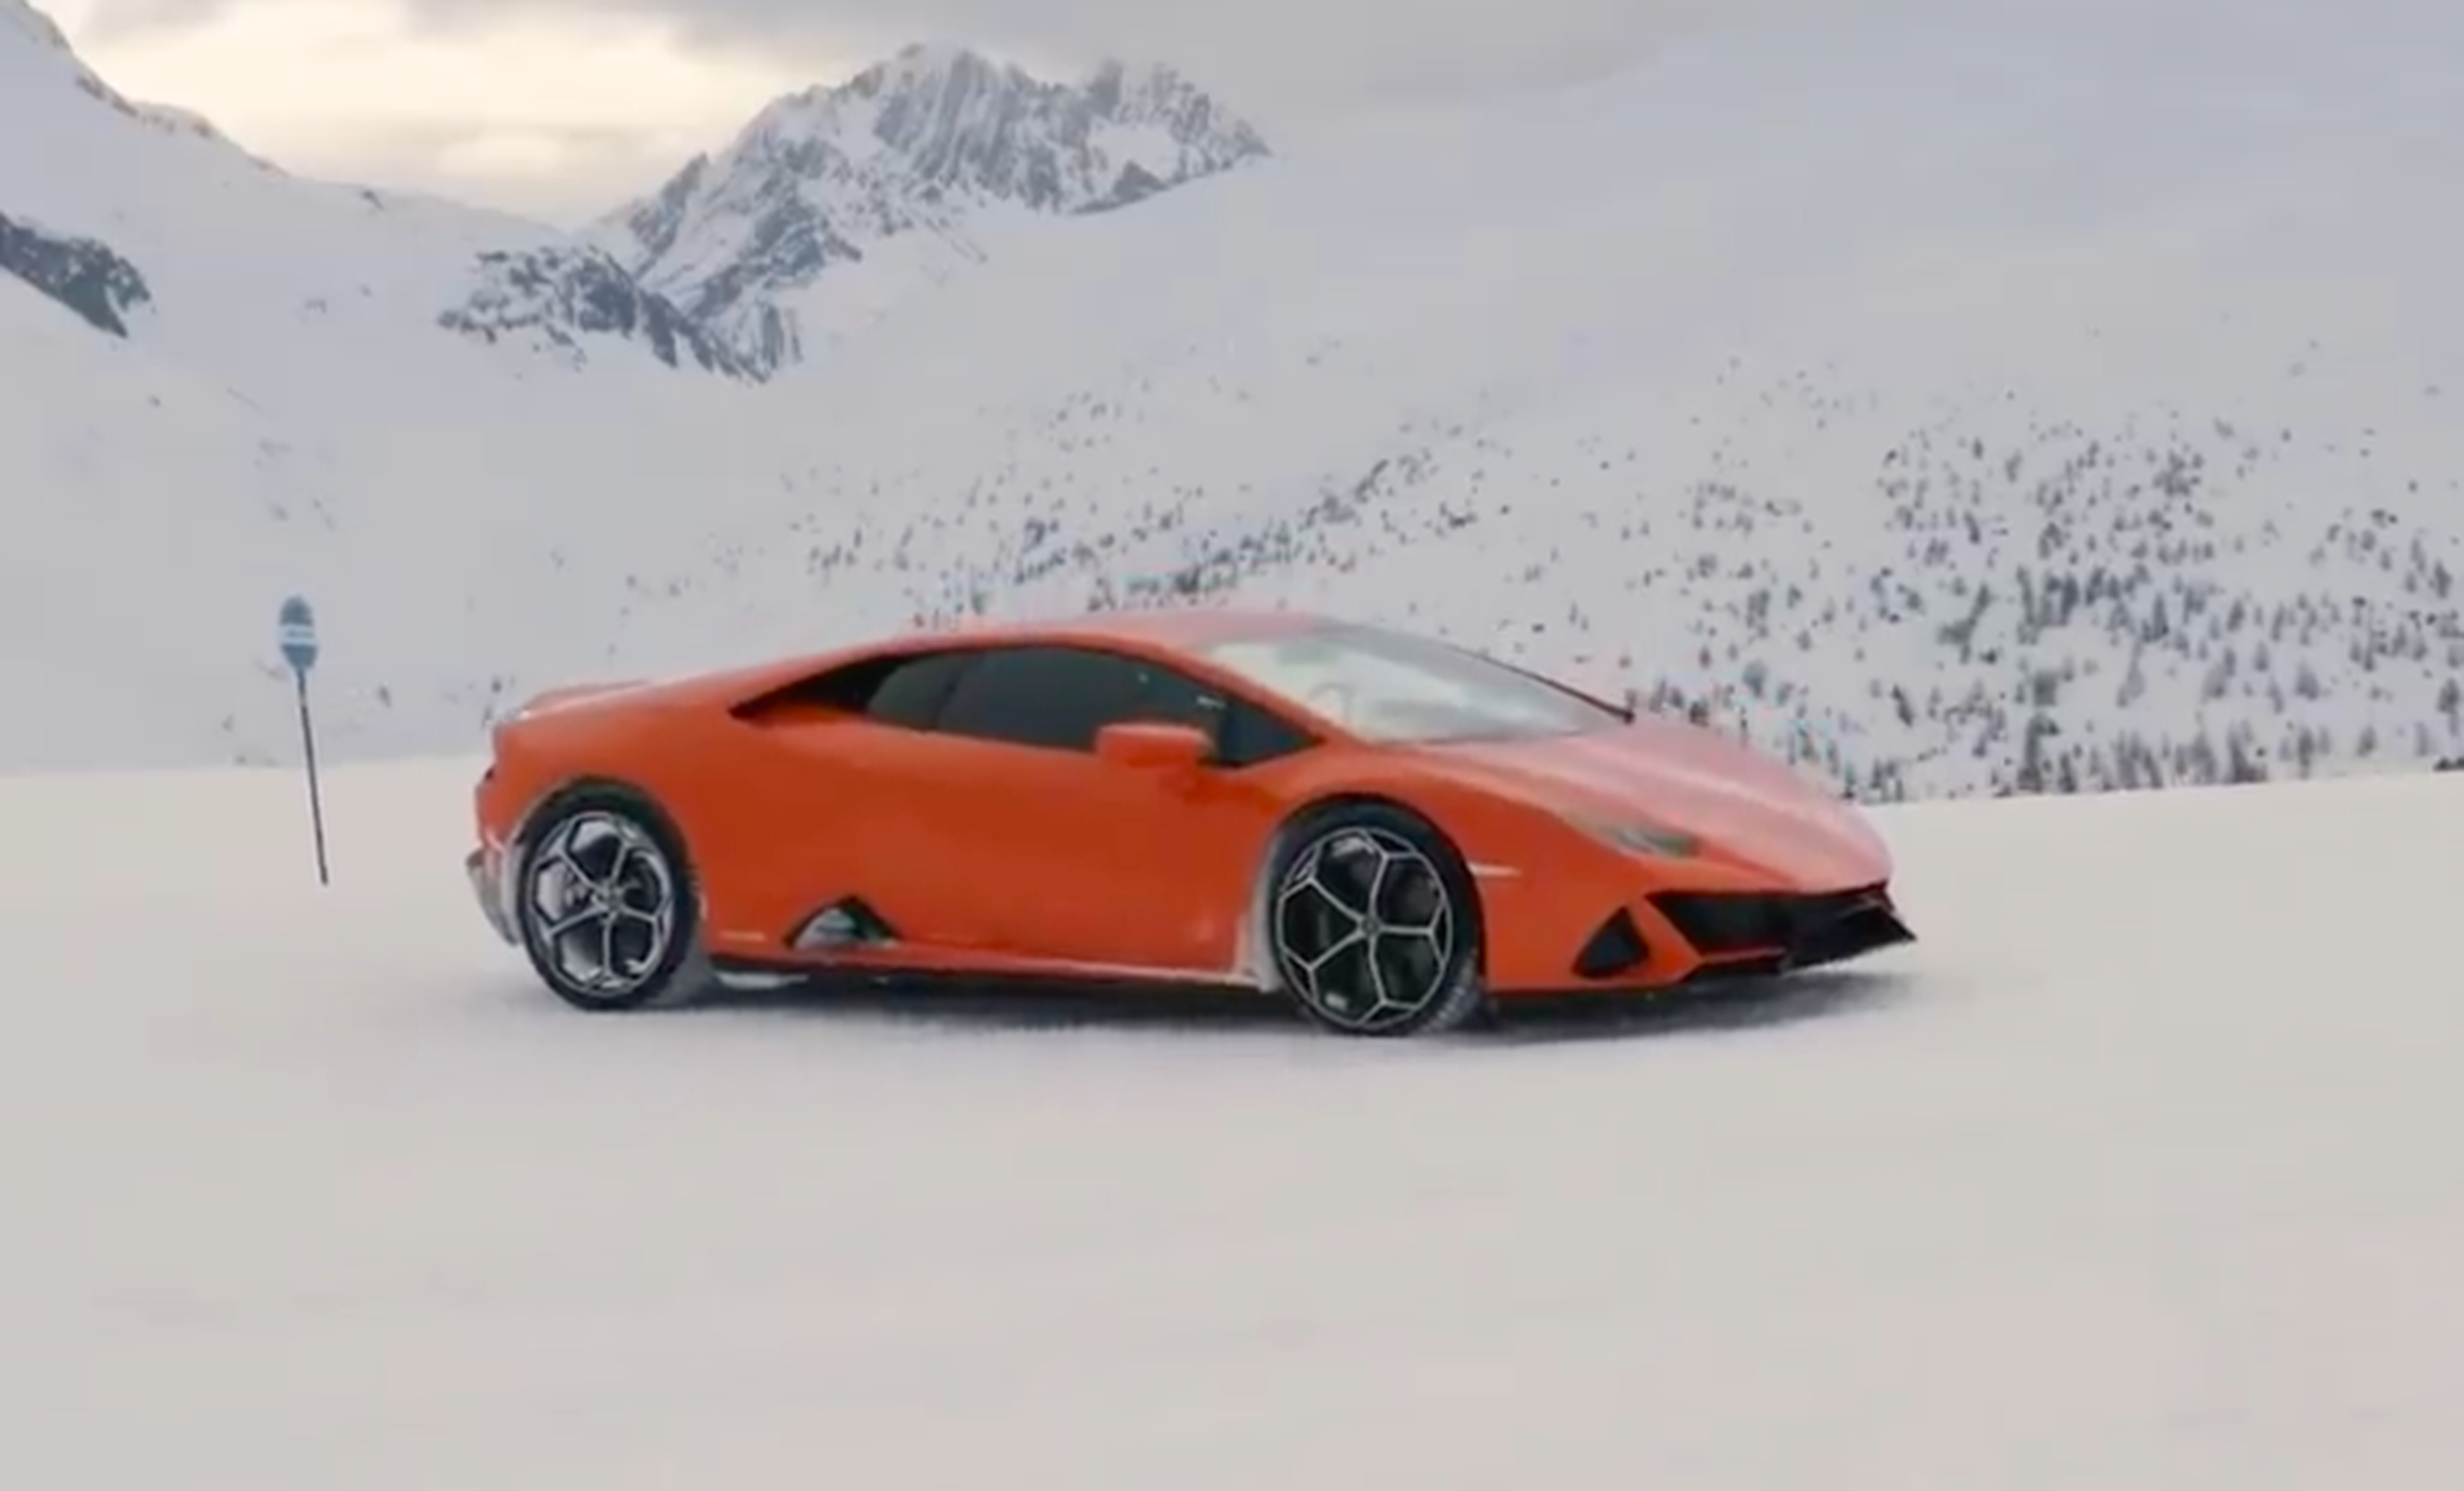 VÍDEO: ¿Un Lamborghini Huracán EVO en nieve? No hay cosa más divertida